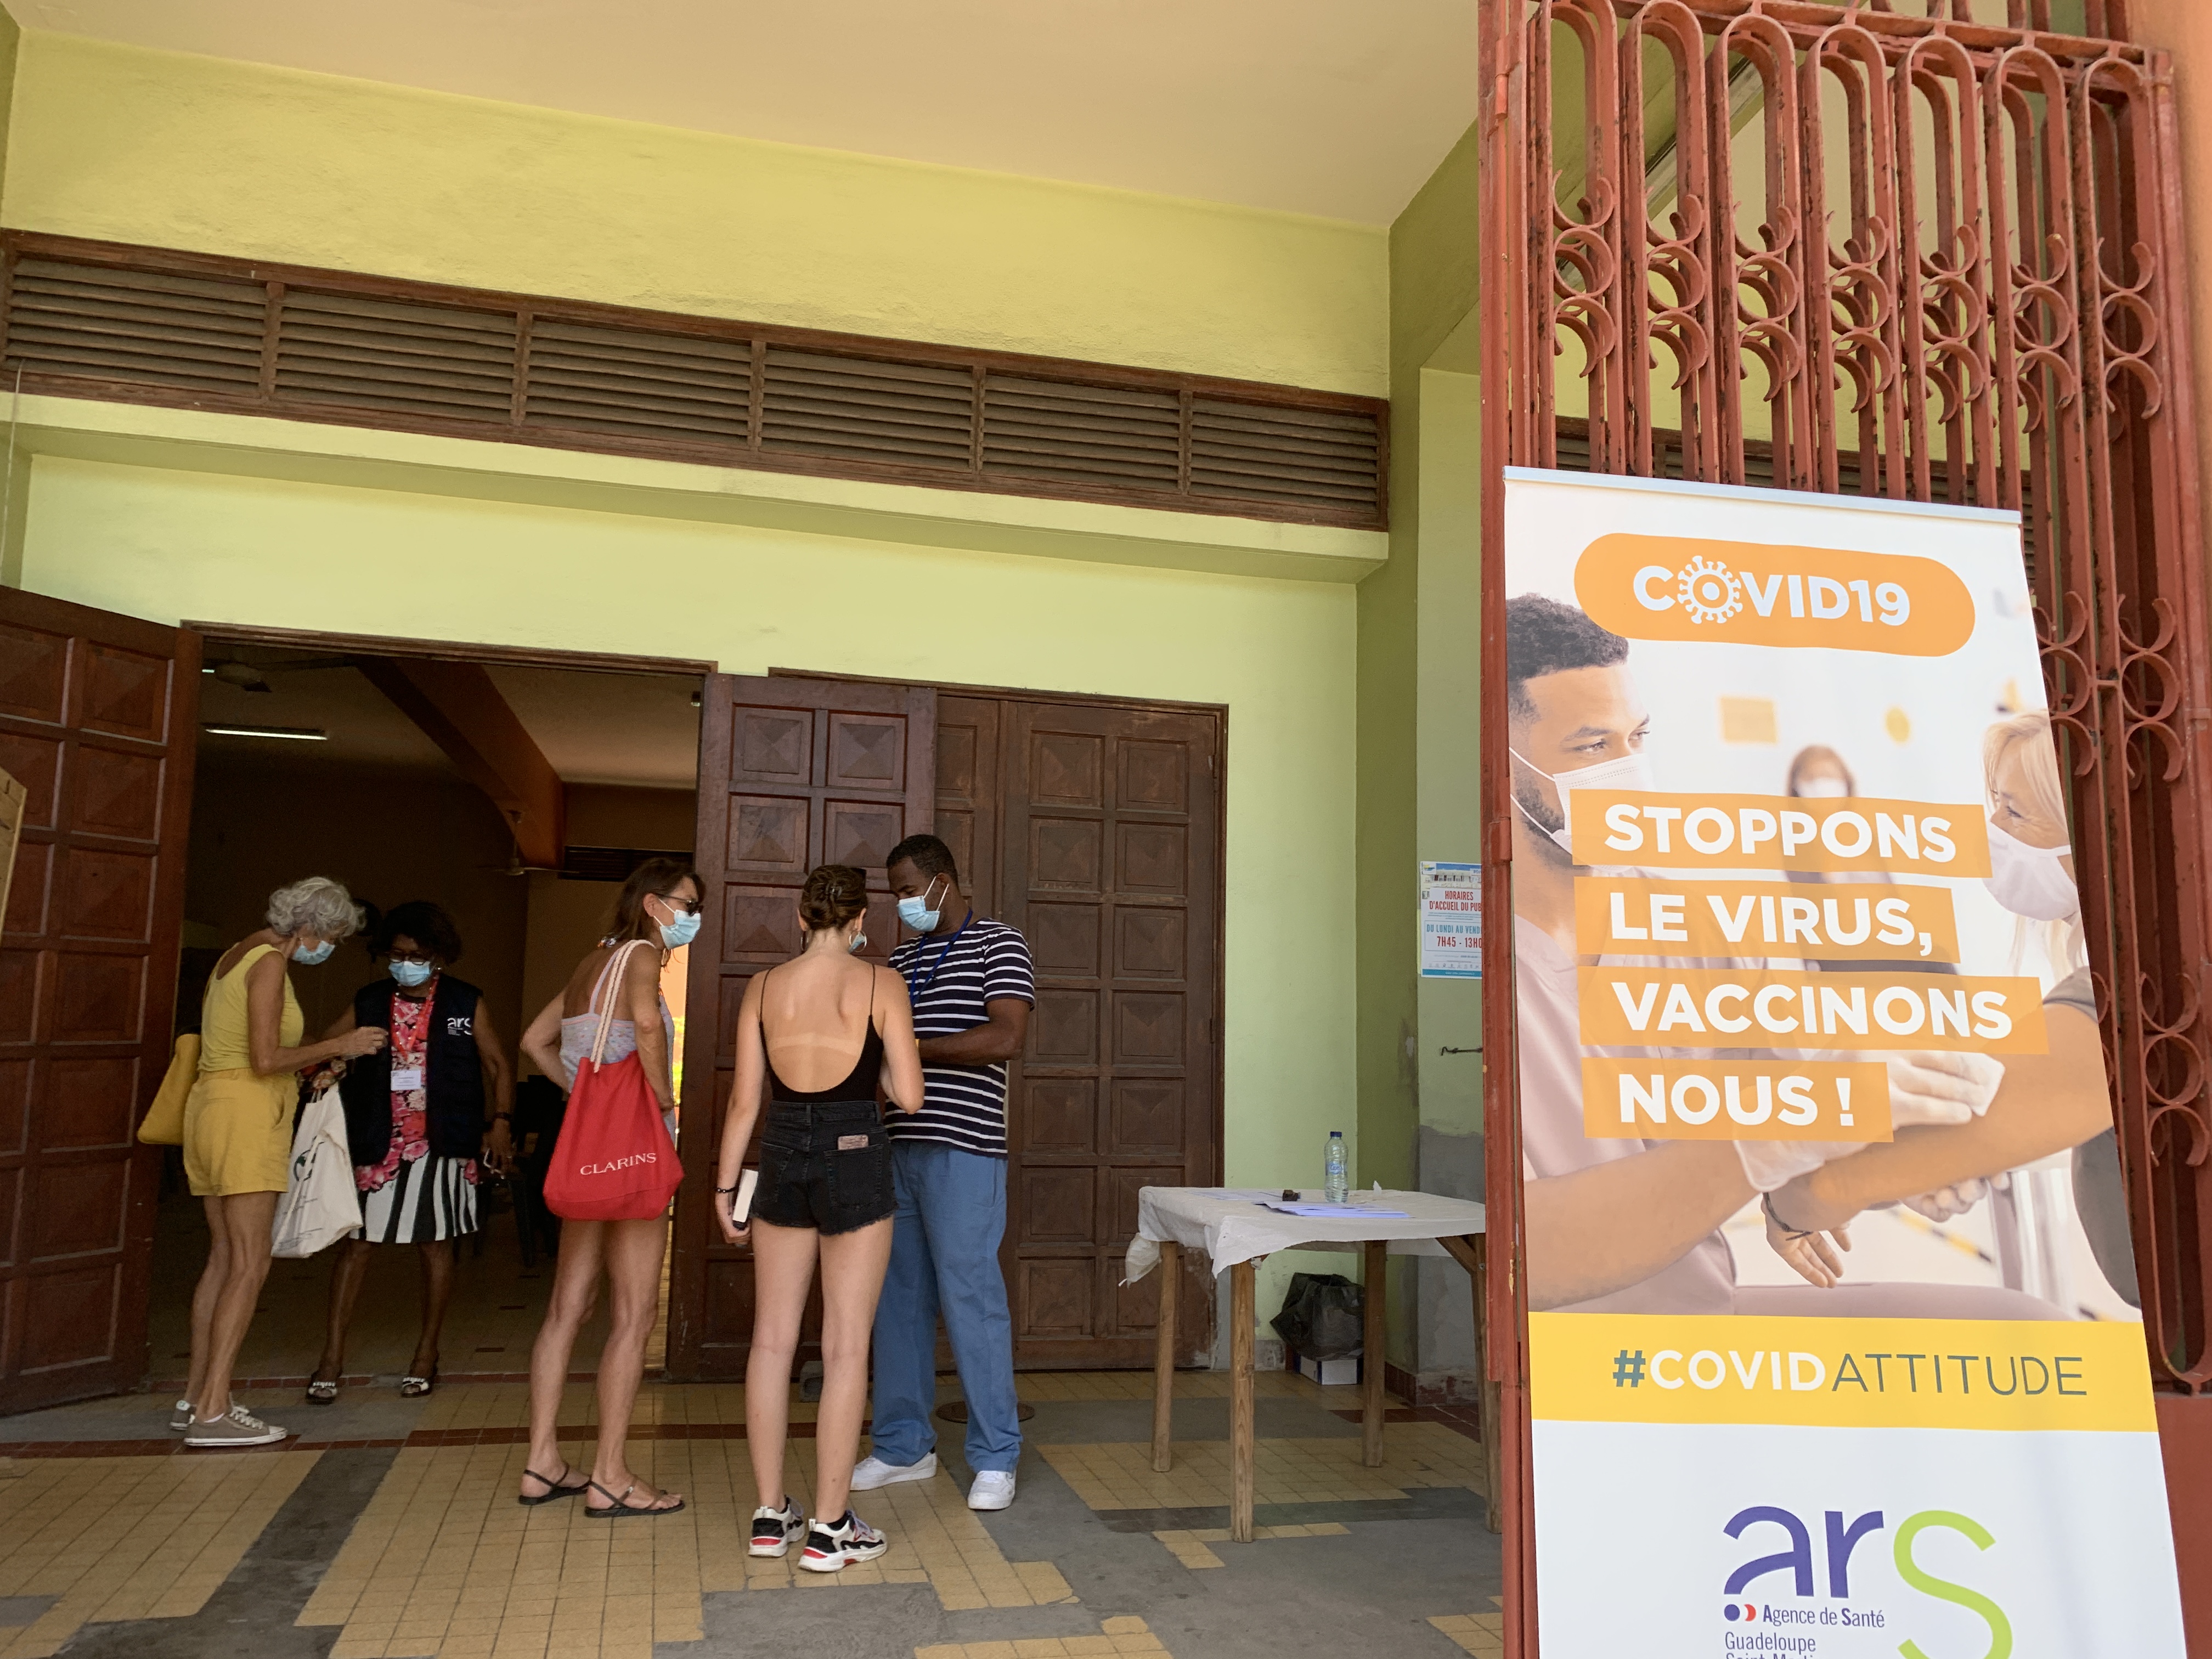     Covid-19 : un centre de vaccination éphémère à Sainte-Anne ce week-end

